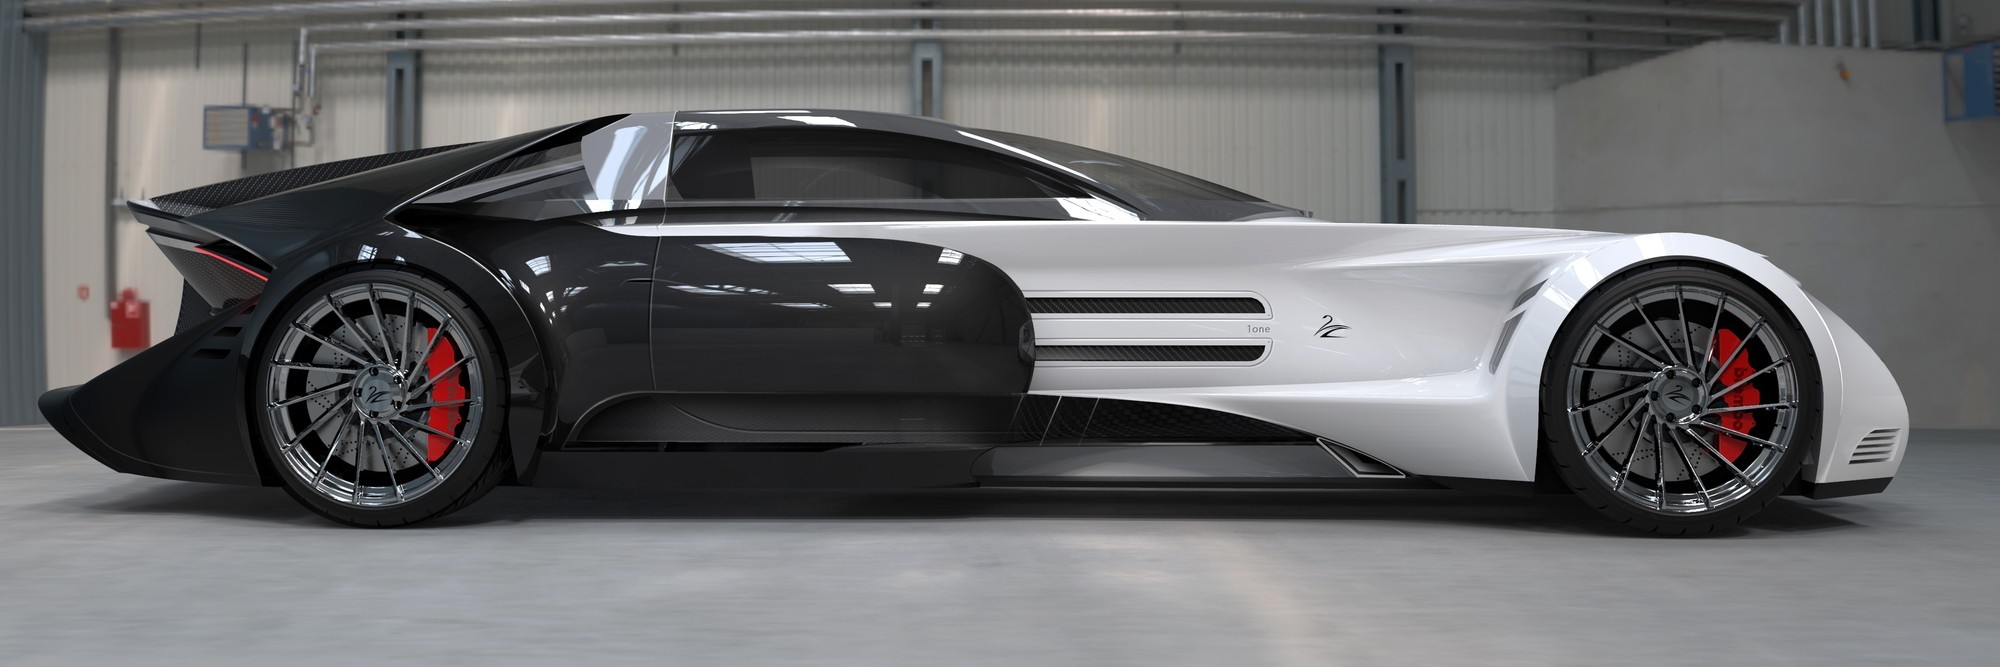 Lazzarini One: 1800-сильное купе с эпатажным дизайном за 2,55 млн евро авто,авто и мото,автосалон,автосамоделки,водителю на заметку,машины,новости автомира,Россия,тюнинг